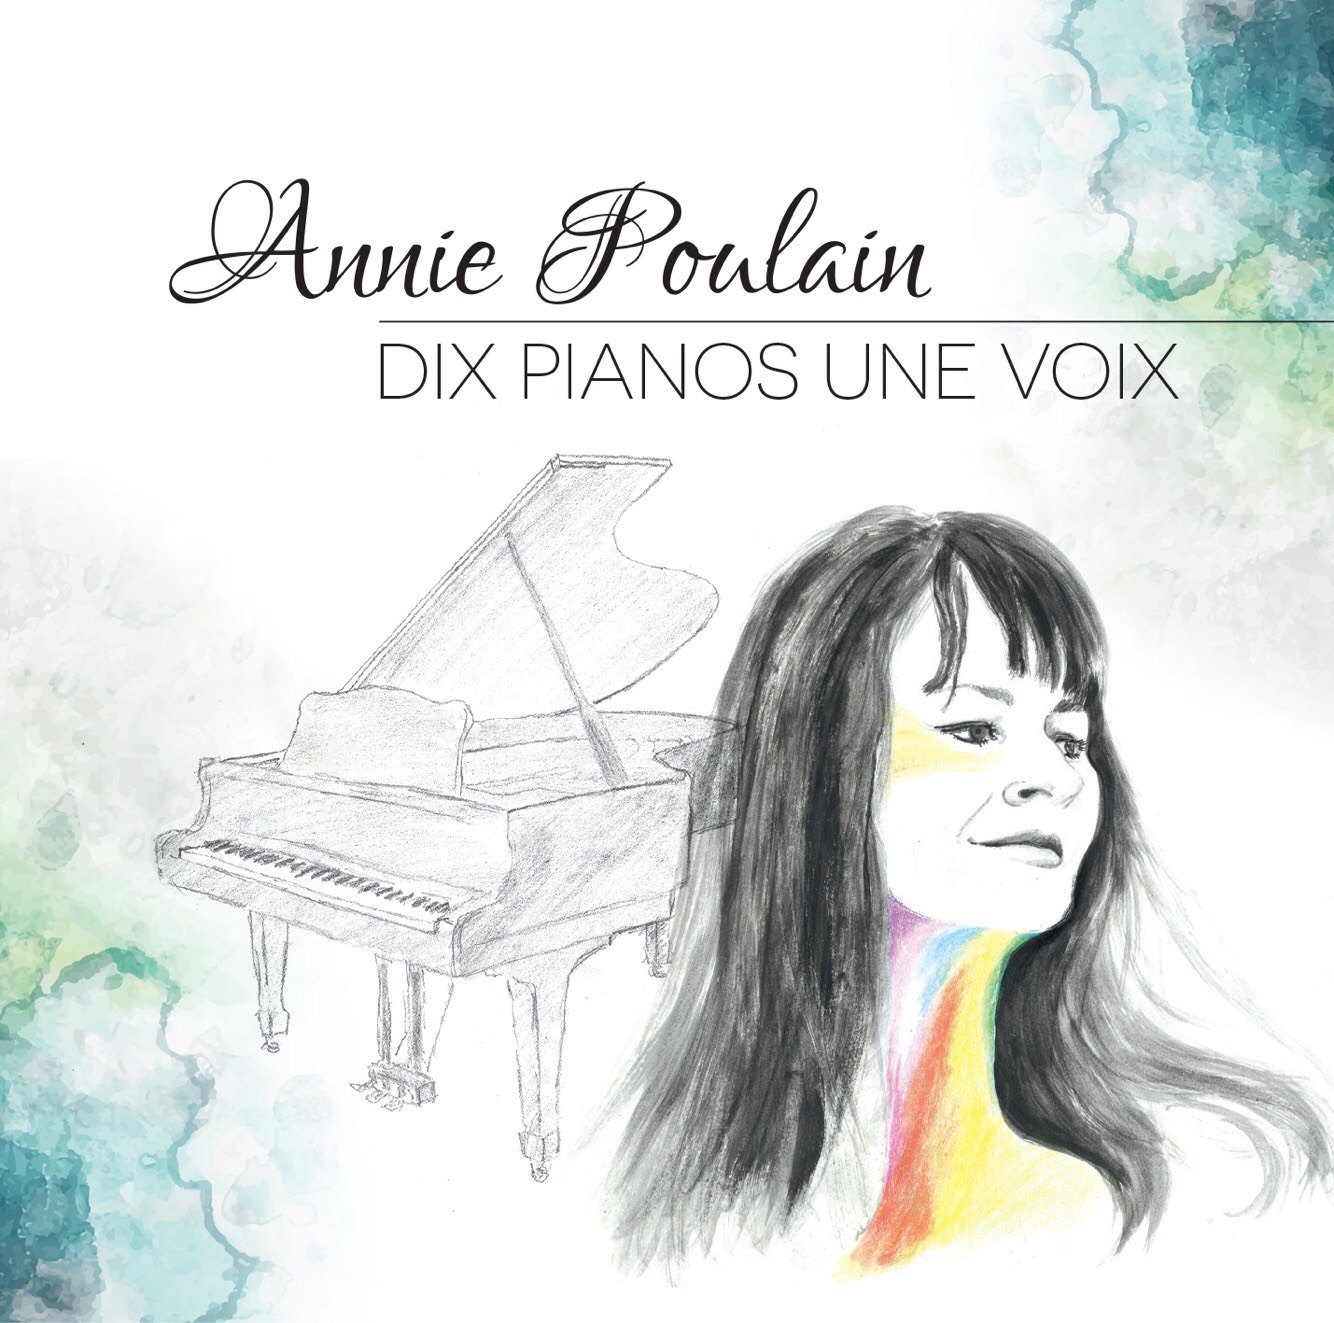 Annie Poulain: Dix pianos, une voix